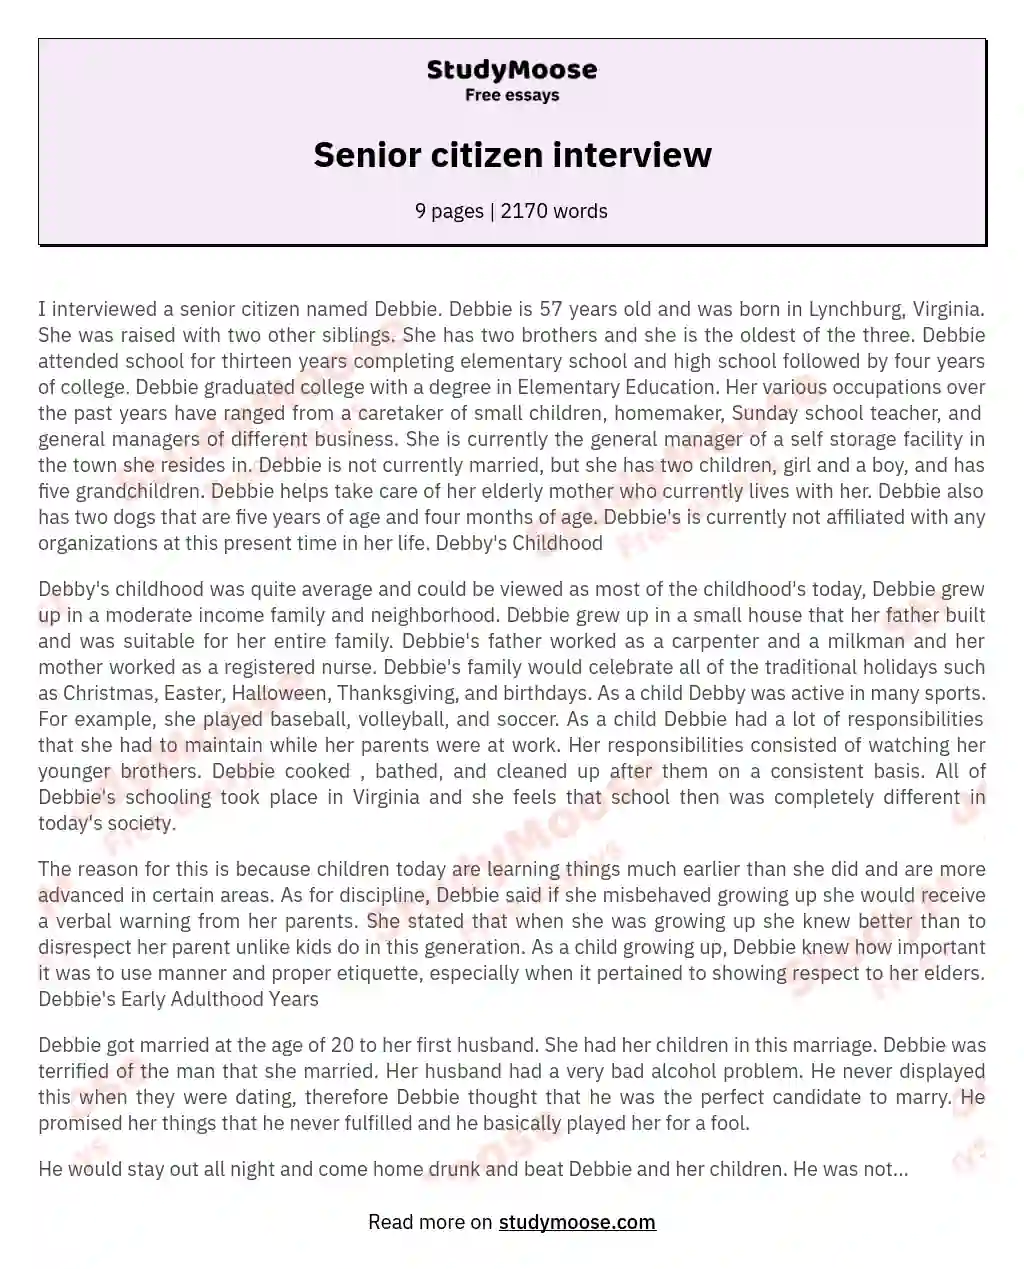 Senior citizen interview essay